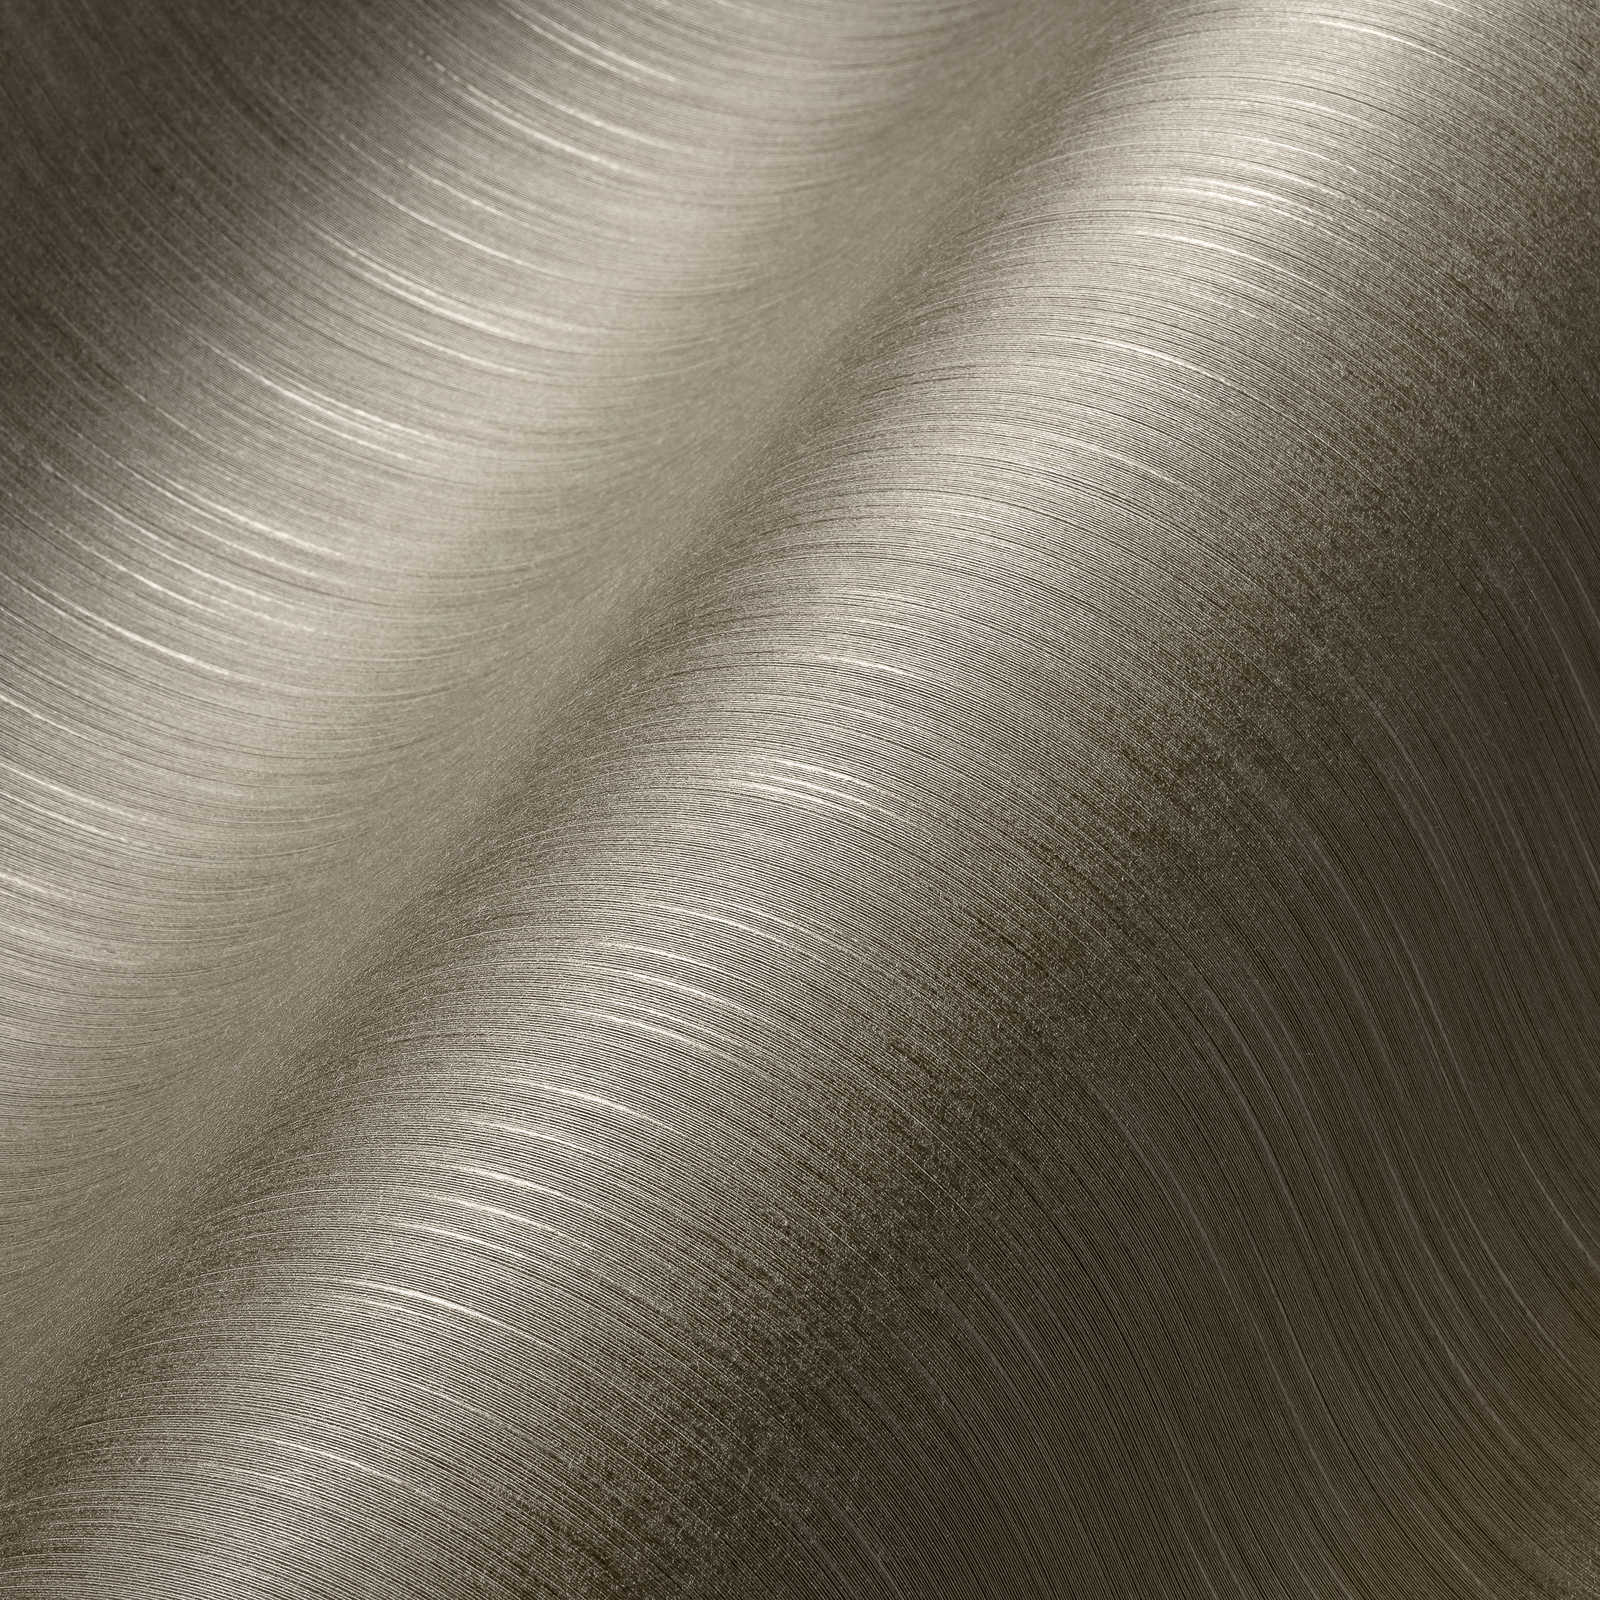             Textiel design behang grijsbruin met gevlekt patroon
        